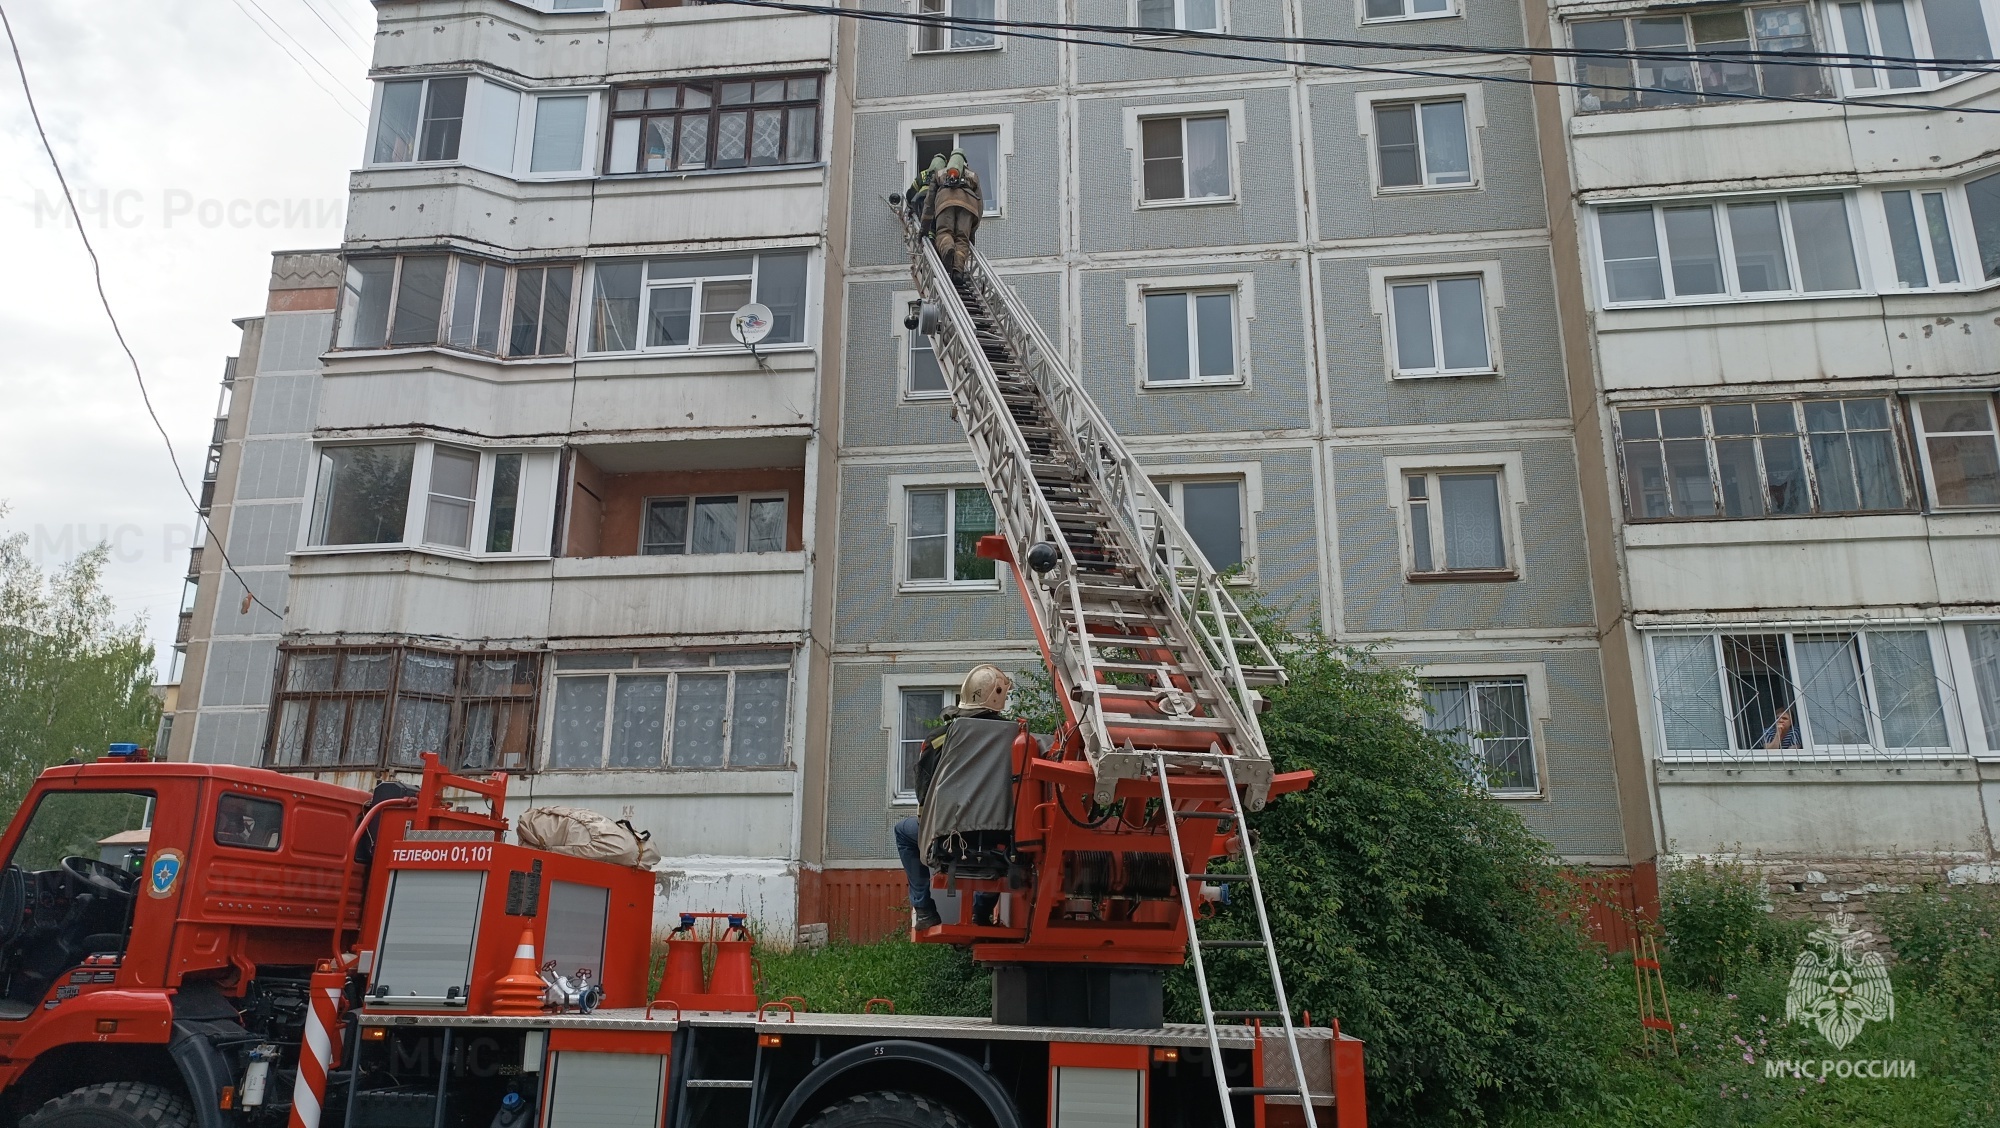 Забывчивость пенсионерки едва не привела к пожару в костромской многоэтажке